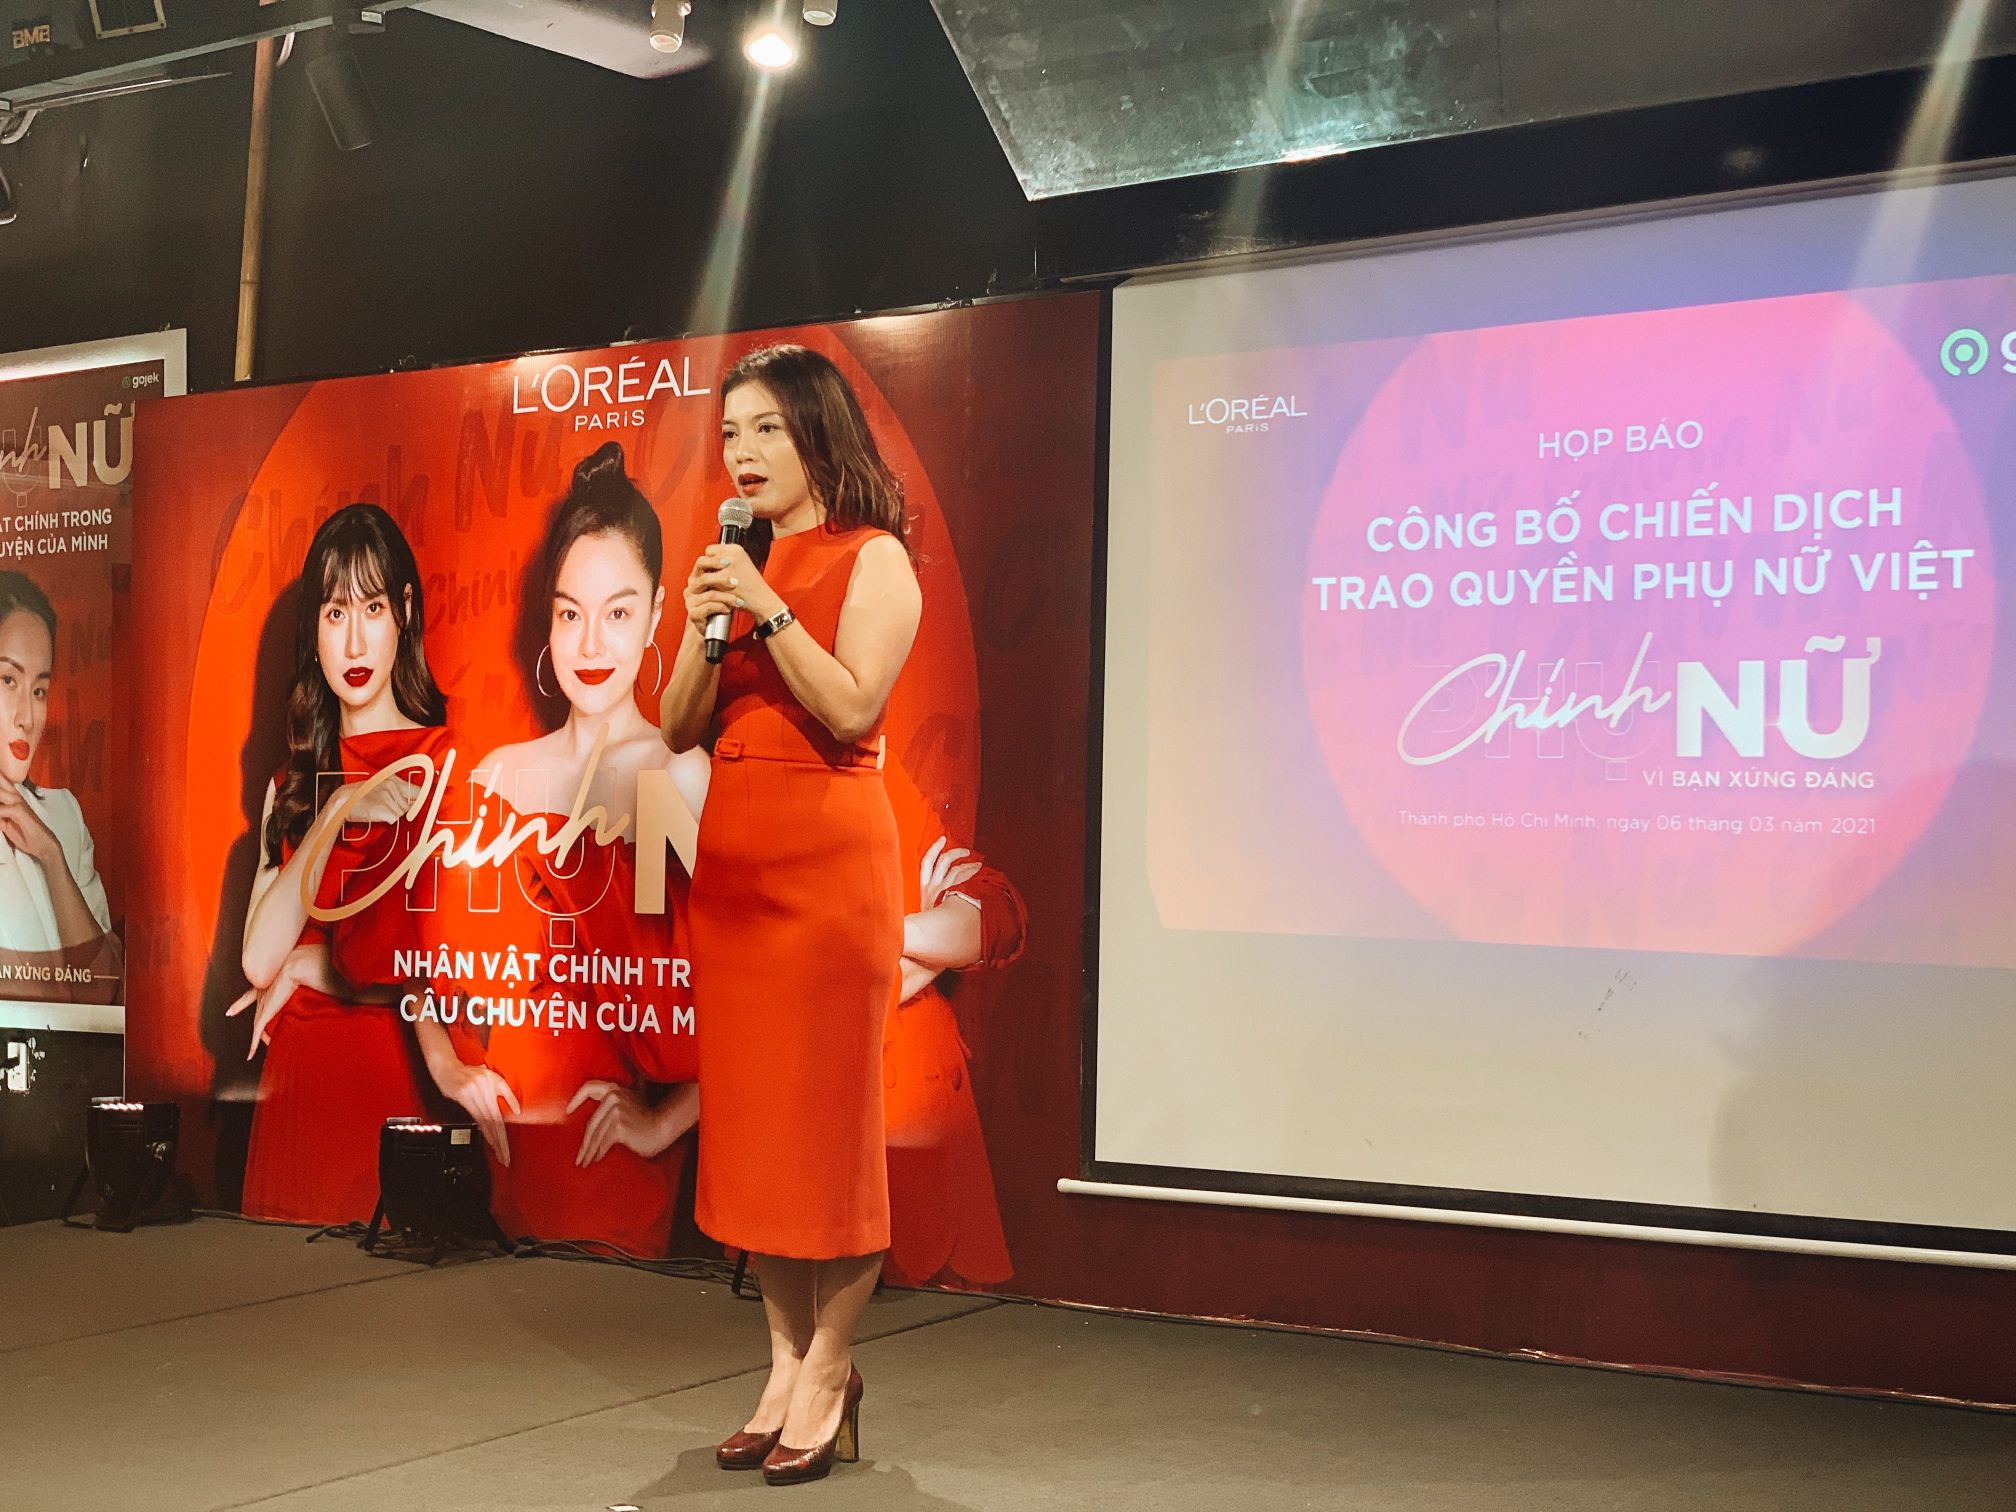 Đại diện nhãn hàng LOréal Paris chia sẻ cảm hứng chương trình L’Oréal Paris hợp tác với Gojek hỗ trợ cho các nữ đối tác tài xế